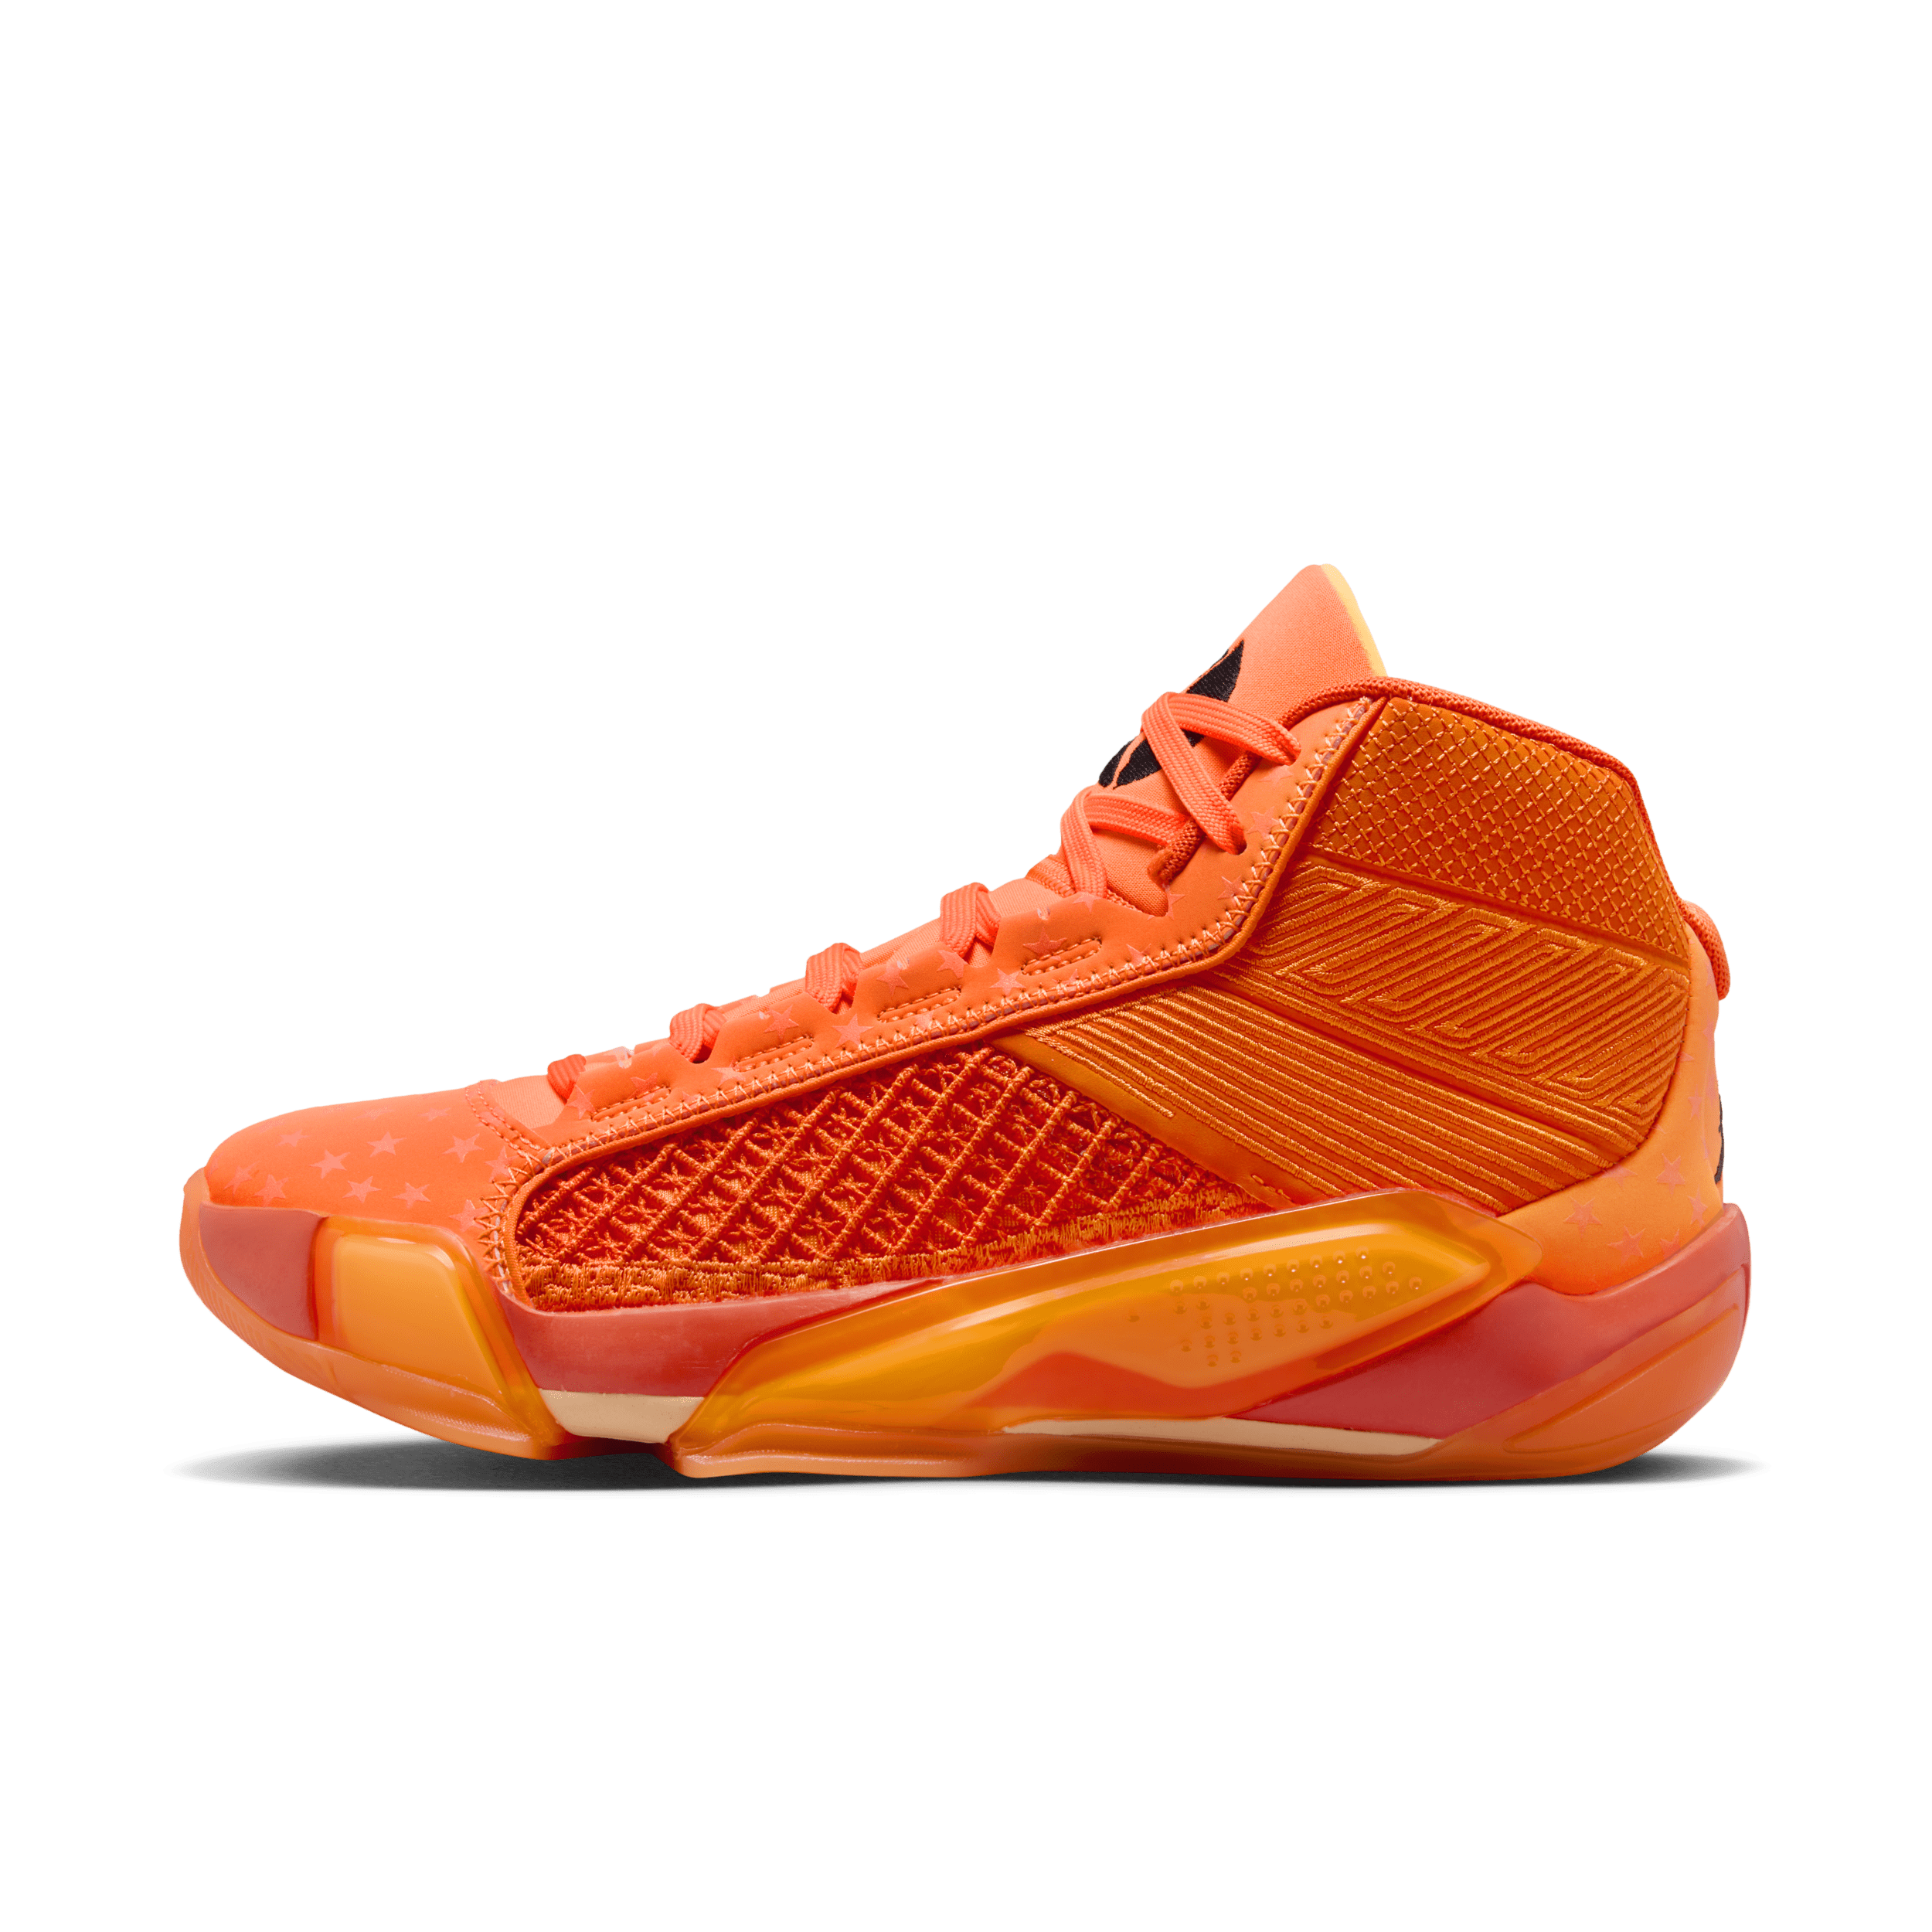 Air Jordan XXXVIII WNBA basketbalschoenen voor dames - Oranje